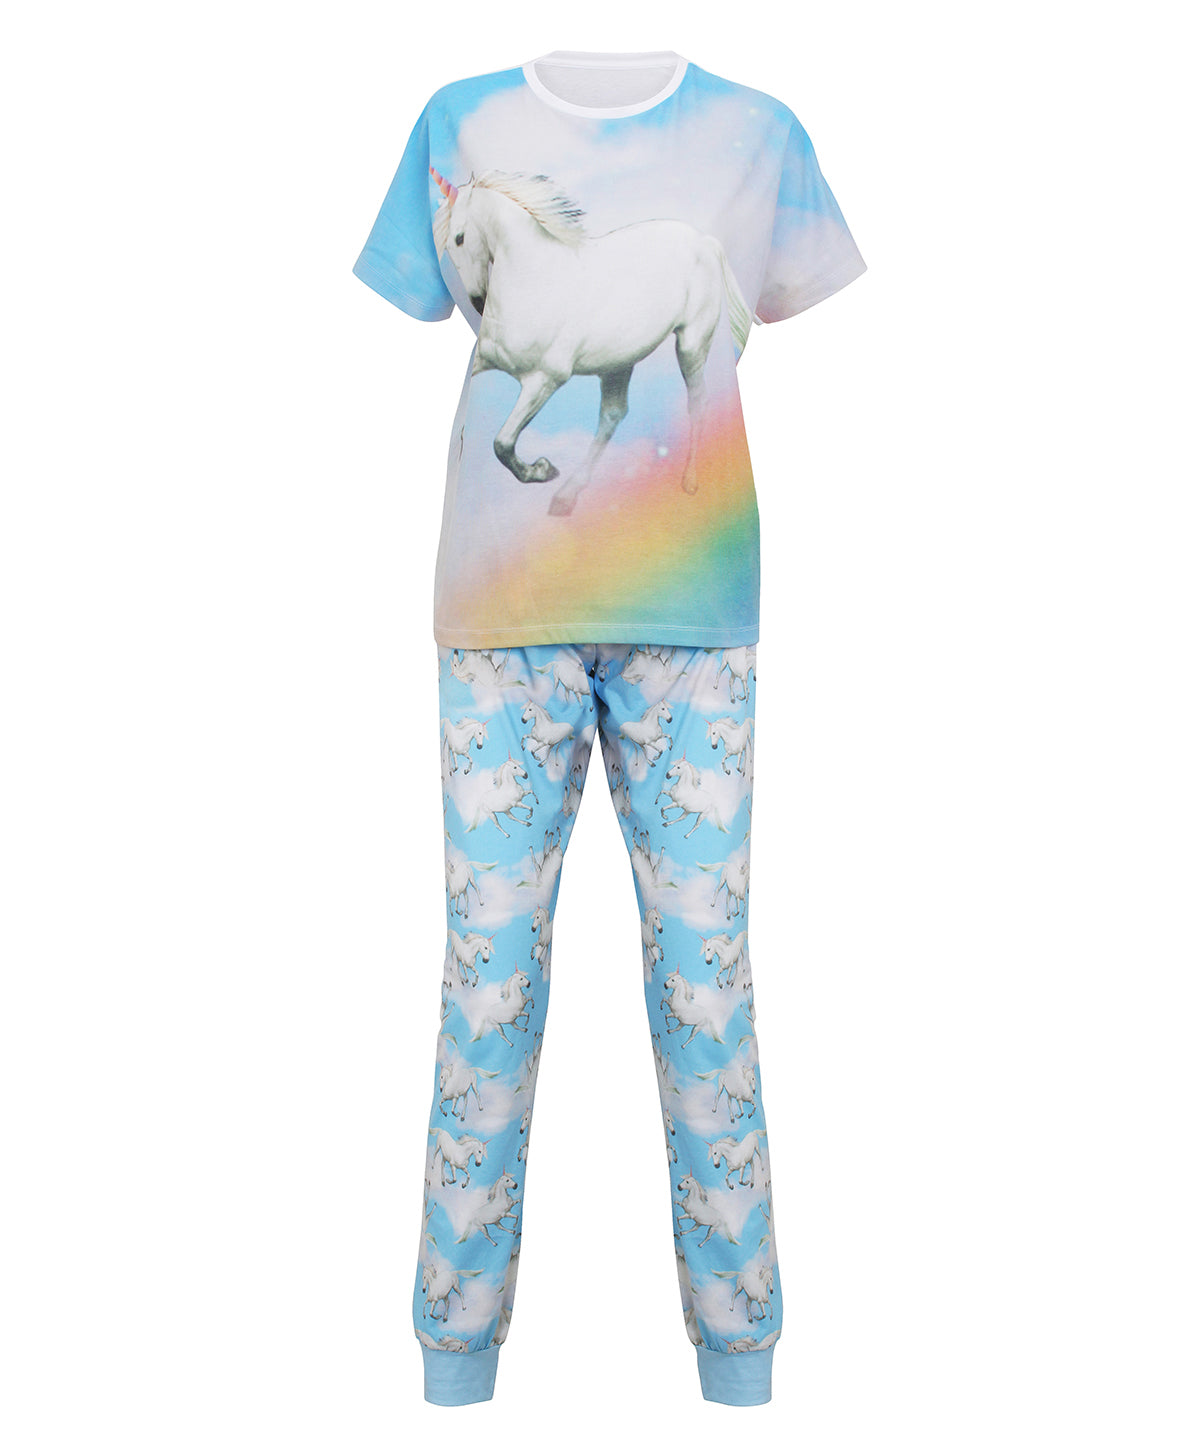 Náttföt - Unicorn Pyjamas